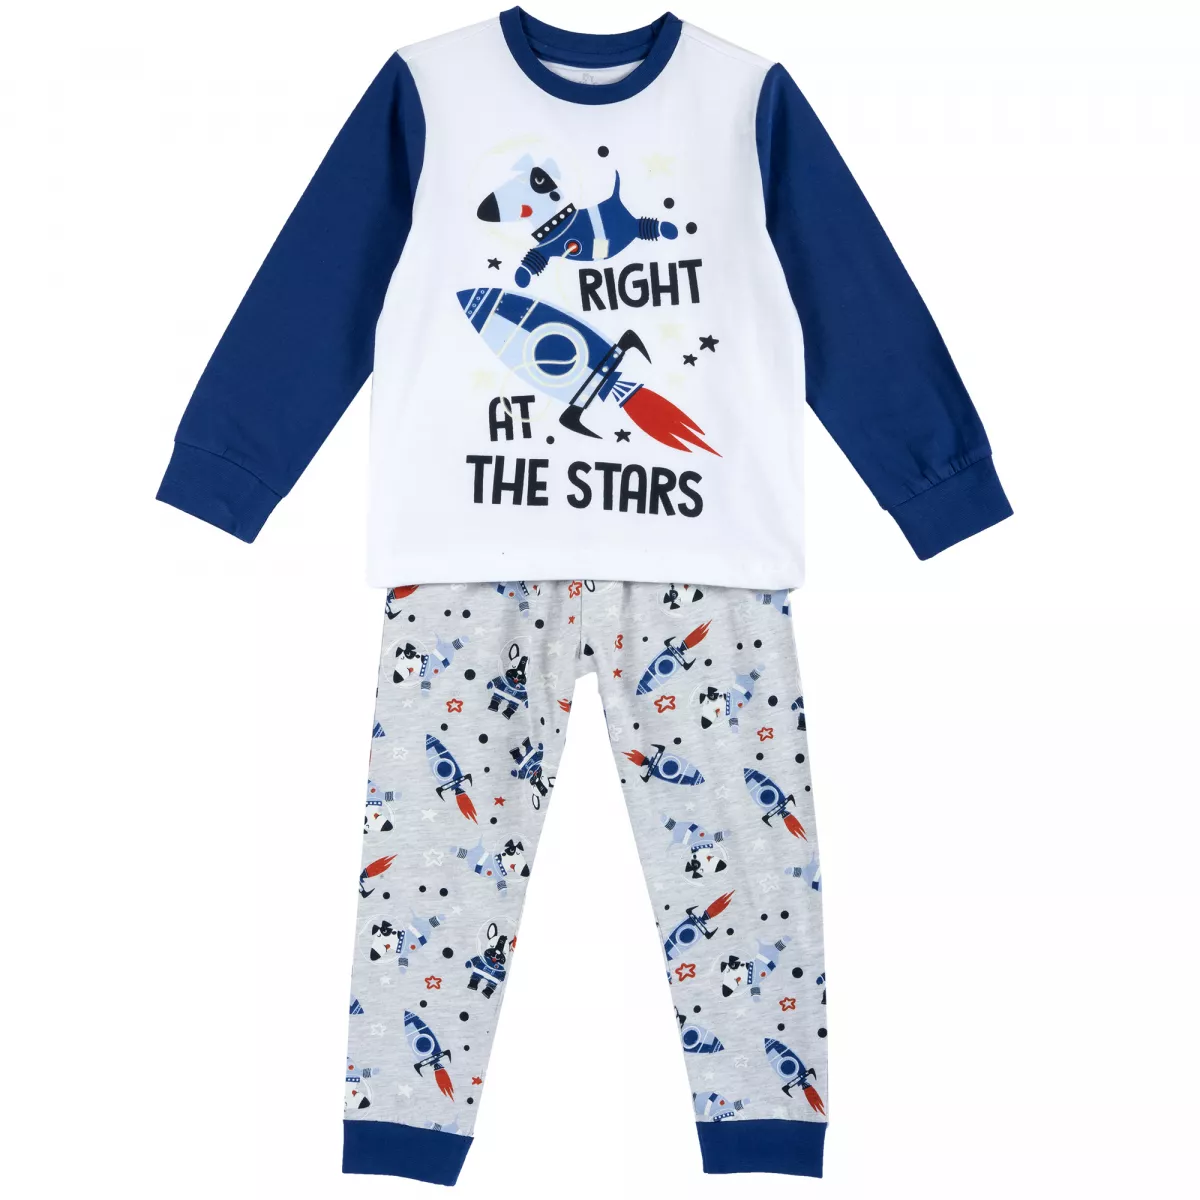 Pijama copii Chicco, albastru cu model, 31356, 122